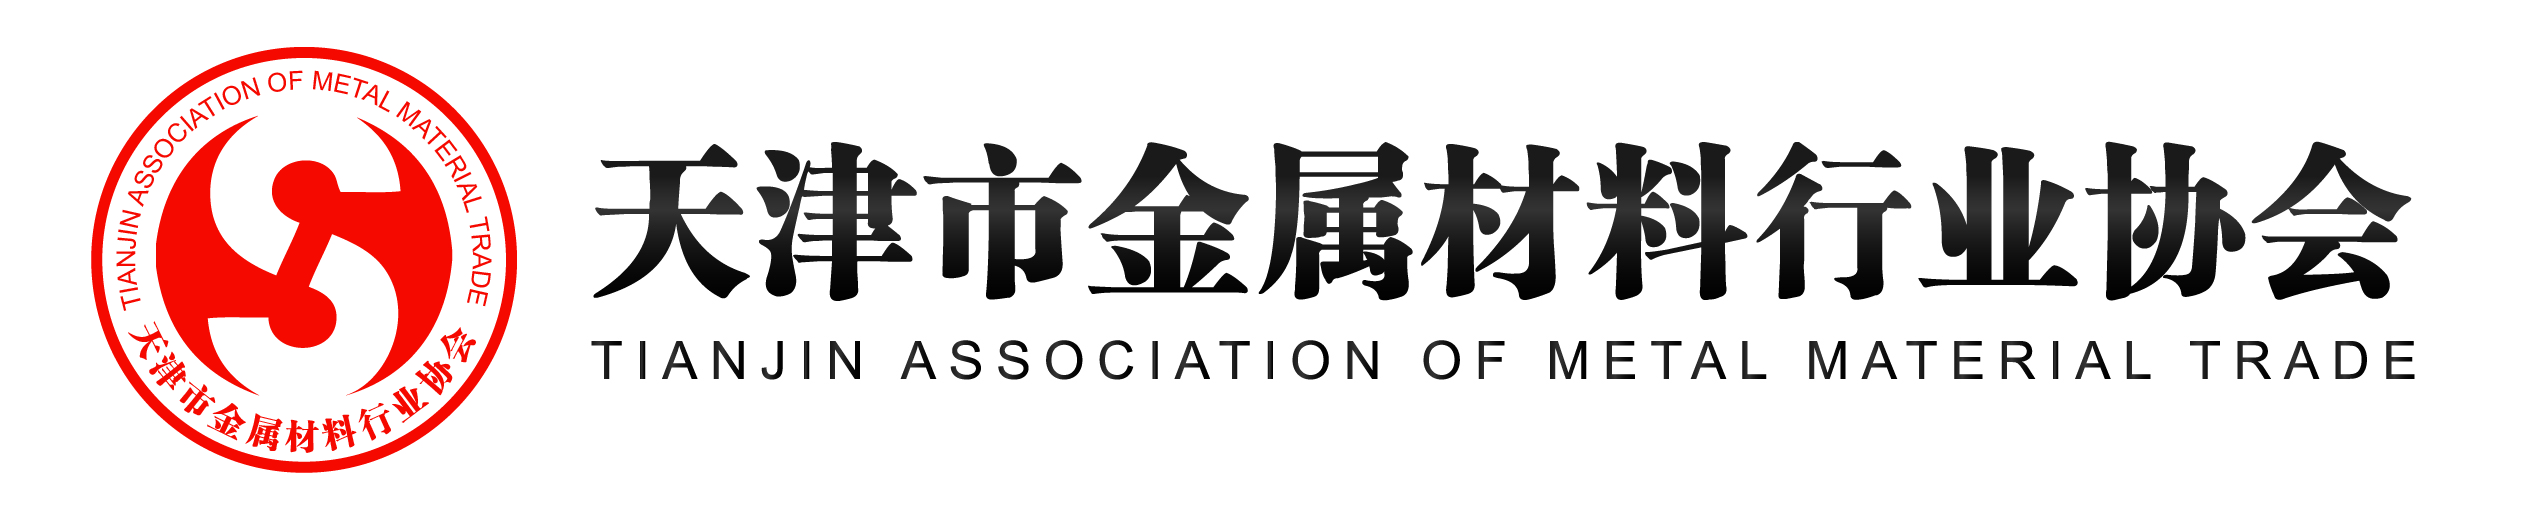 天津市金属材料行业协会